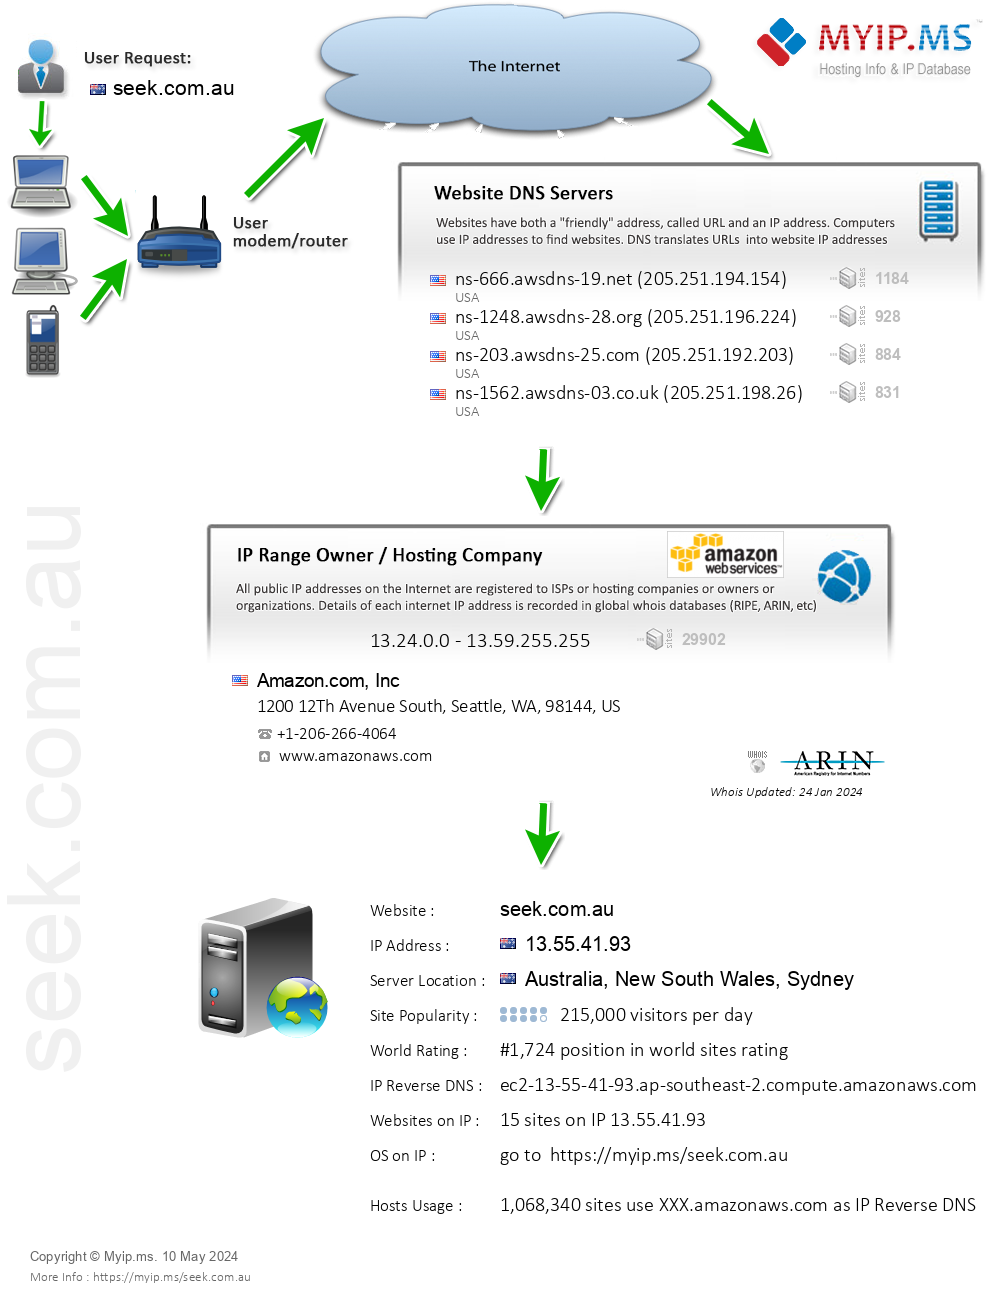 Seek.com.au - Website Hosting Visual IP Diagram